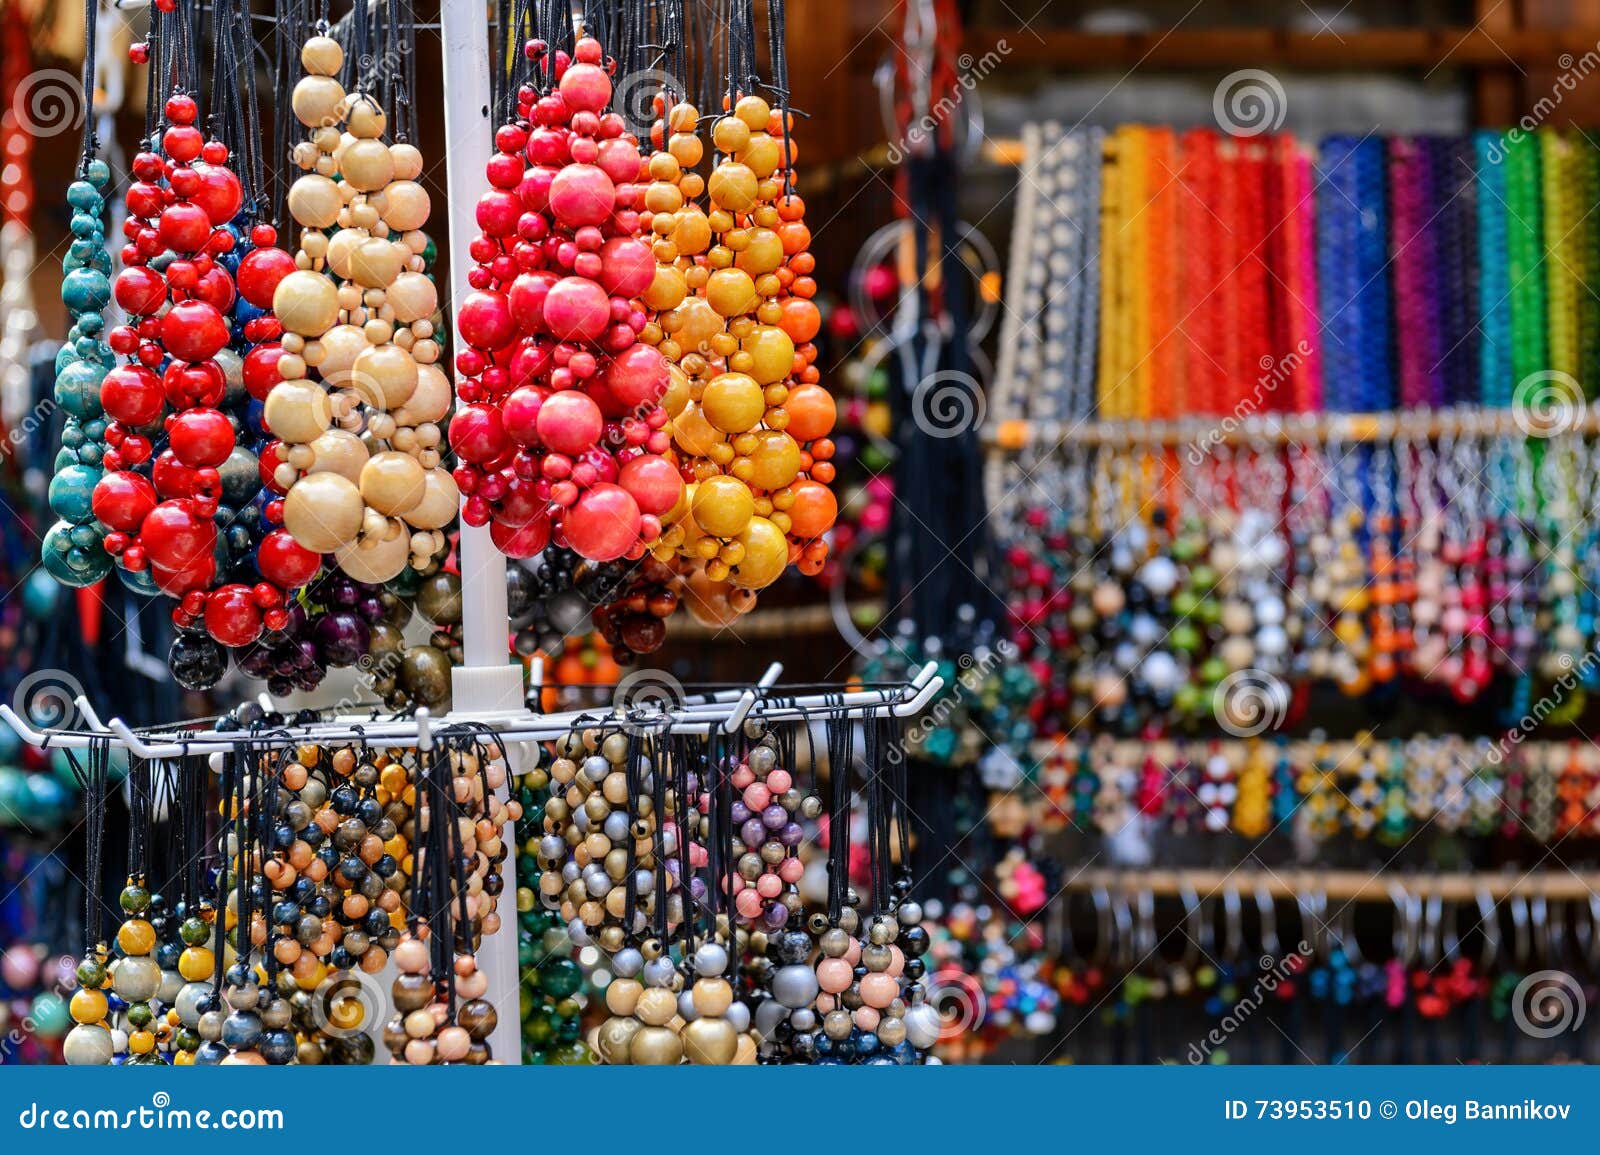 Рынок шаров. Базар шарик. Азербайджан разноцветные шарики на рынке.